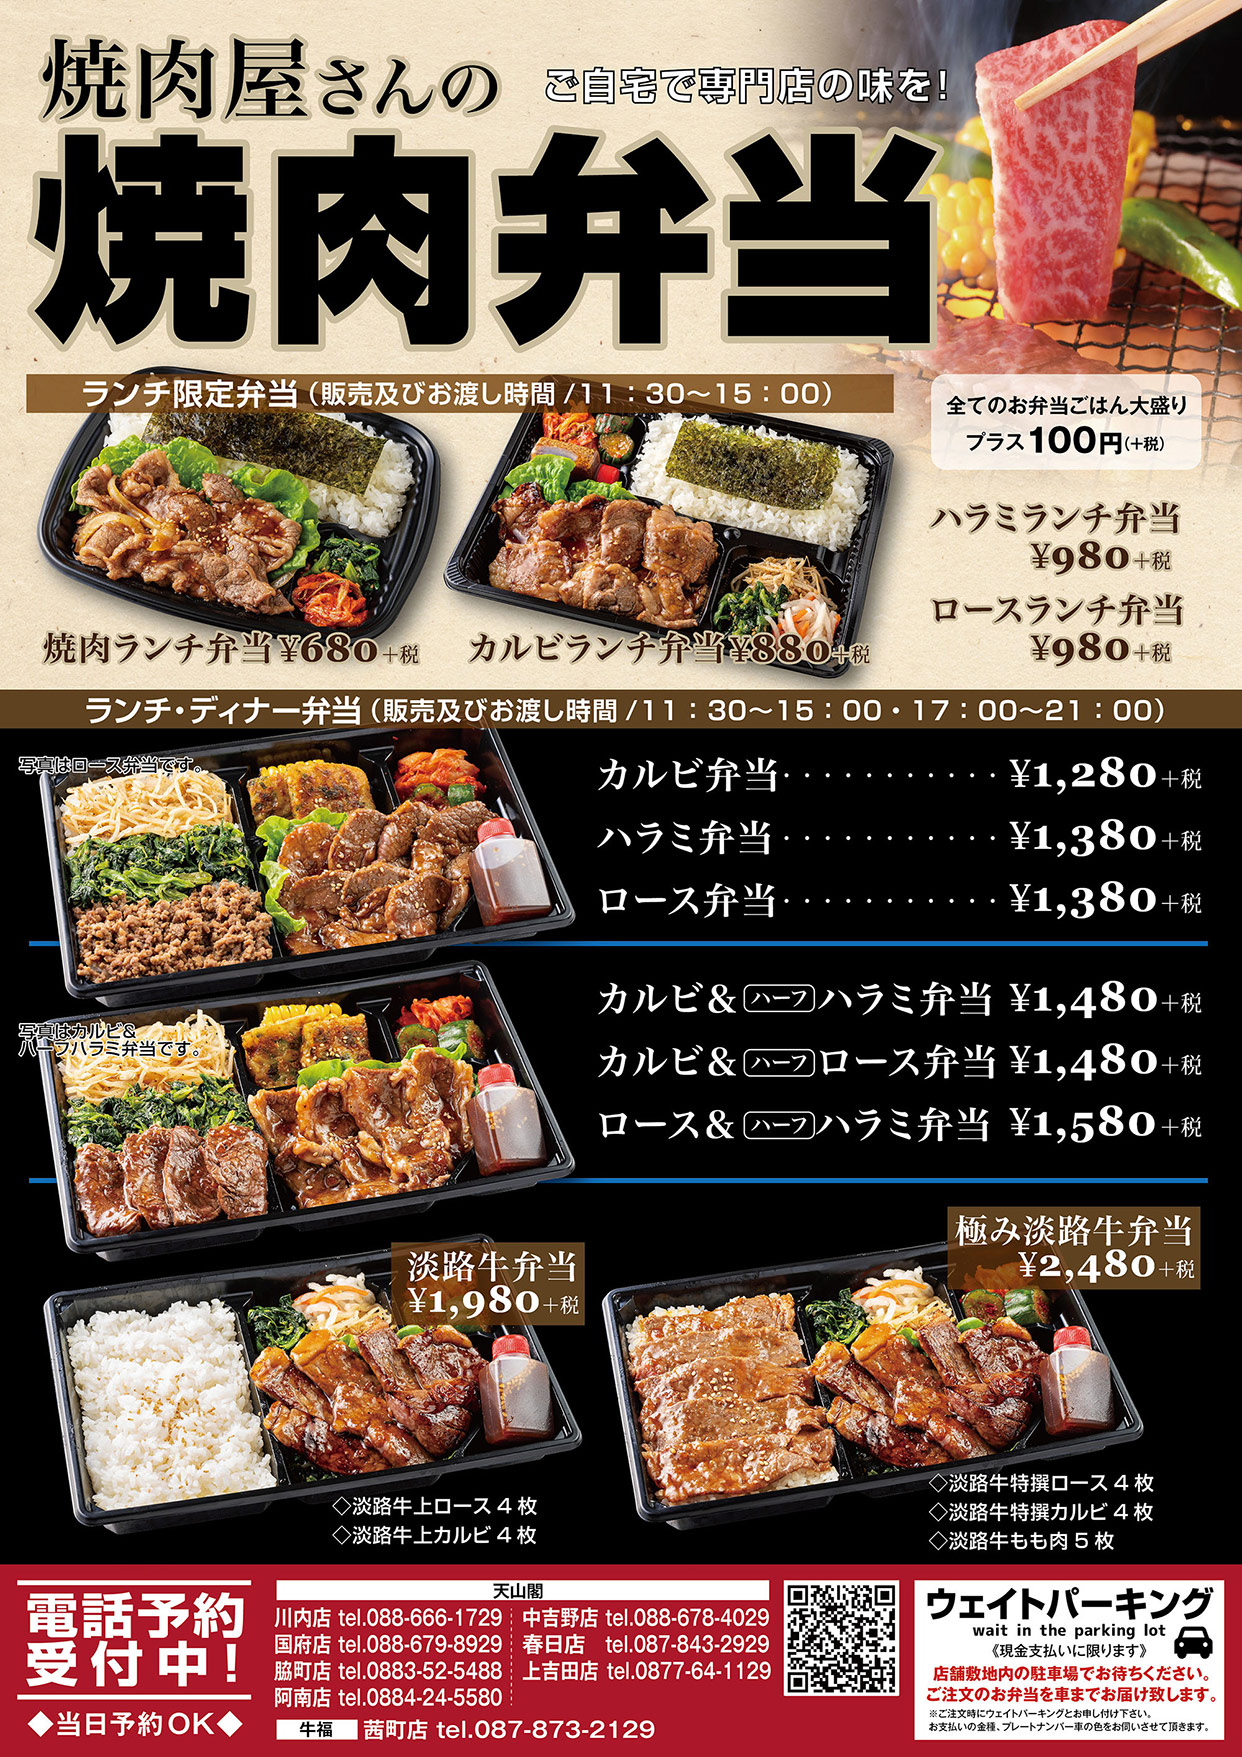 天山閣 牛福 焼肉専門店の味をご自宅で お弁当のテイクアウトはじめました 徳島を拠点とした飲食店を展開するふじやグループオフィシャルサイト